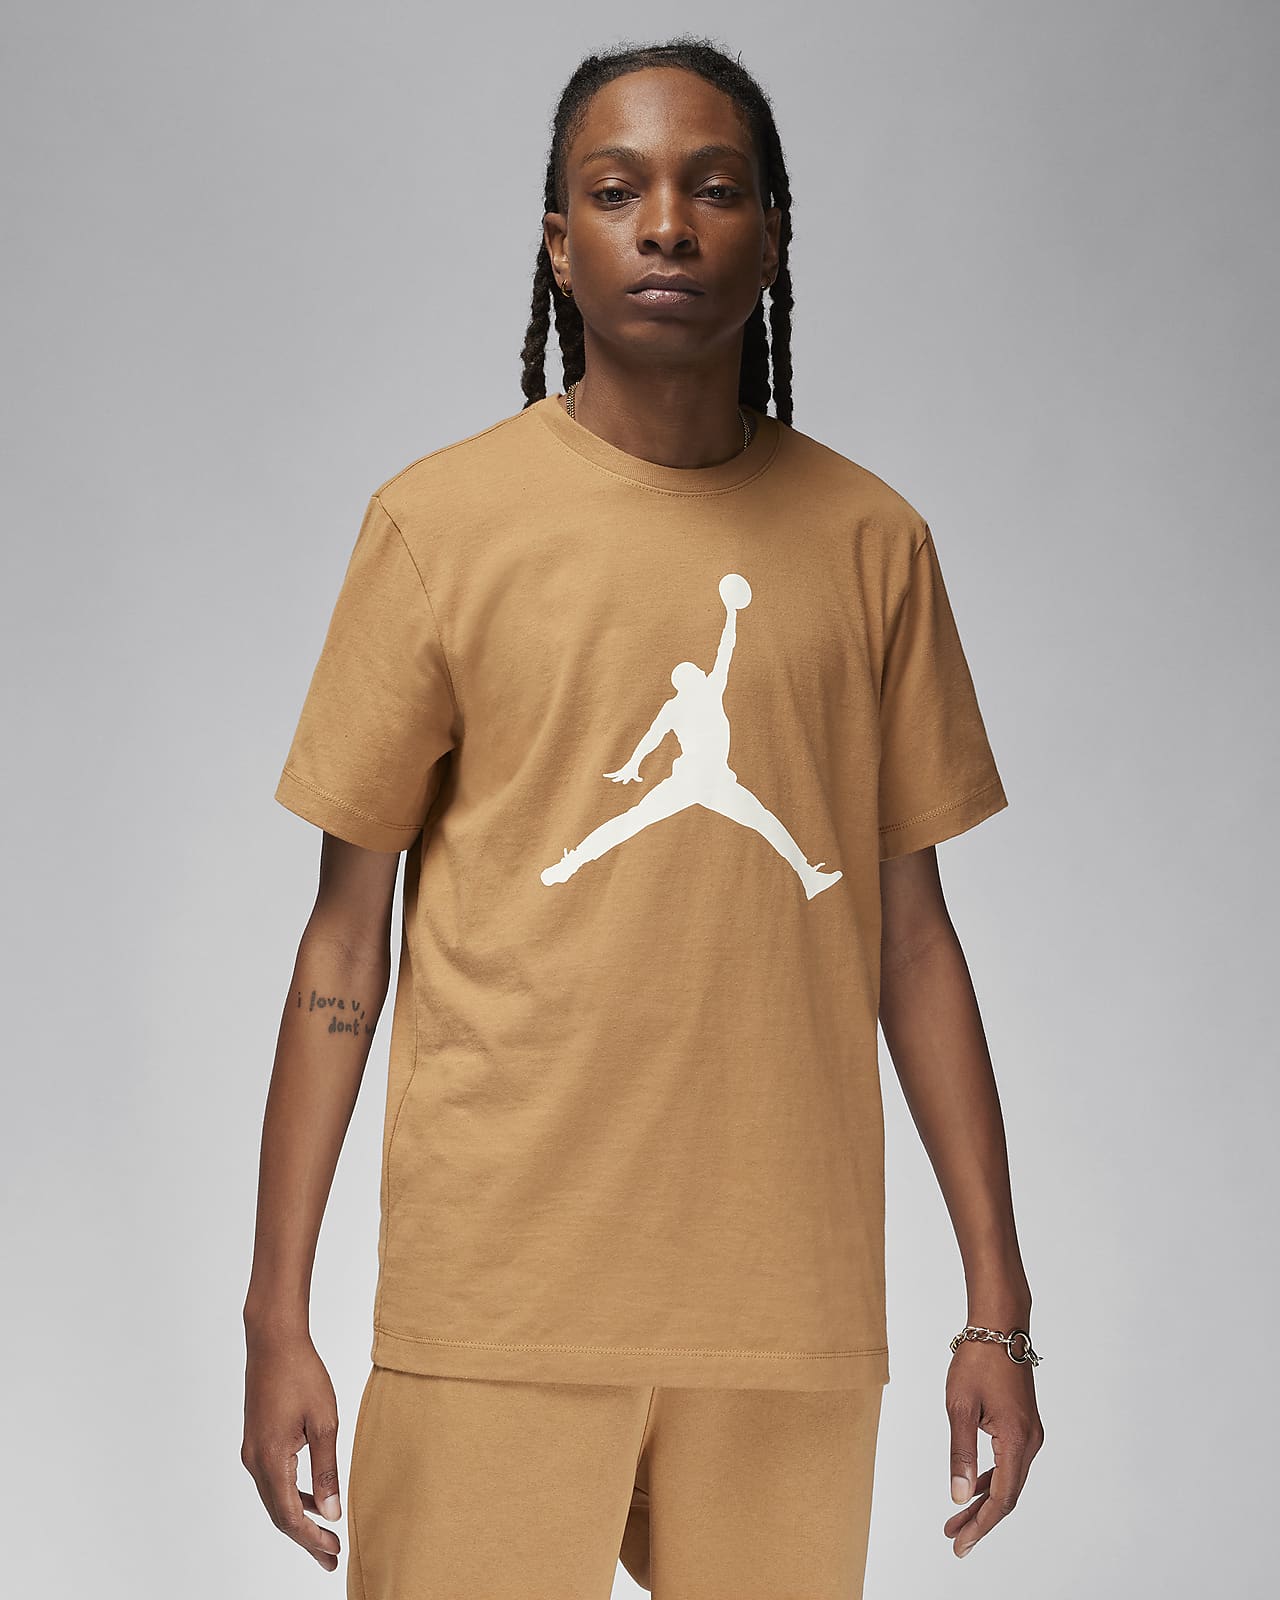 T-shirt męski Jordan Jumpman